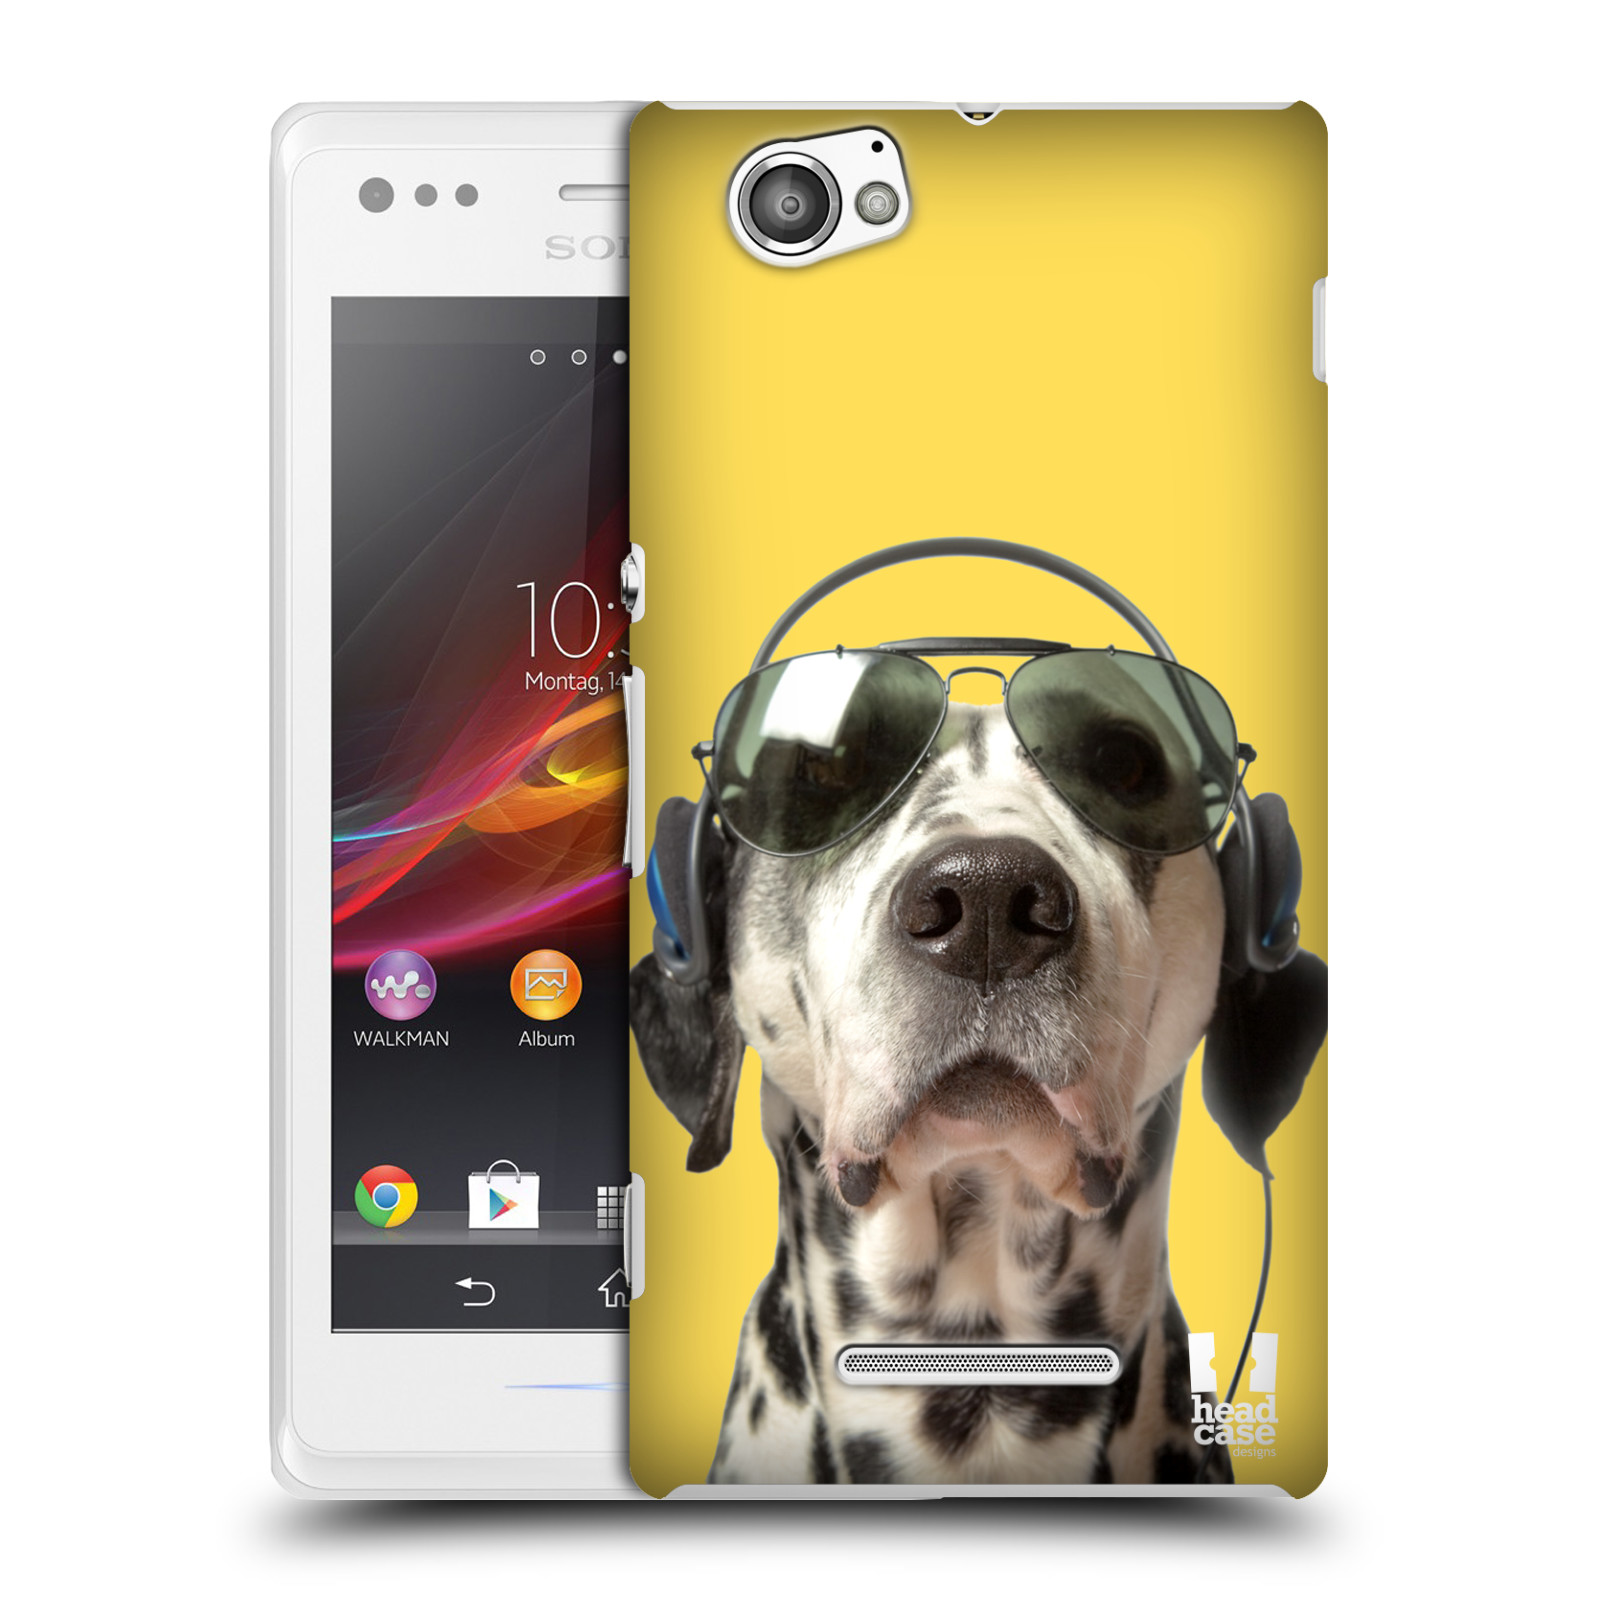 HEAD CASE plastový obal na mobil Sony Xperia M vzor Legrační zvířátka dalmatin se sluchátky žlutá